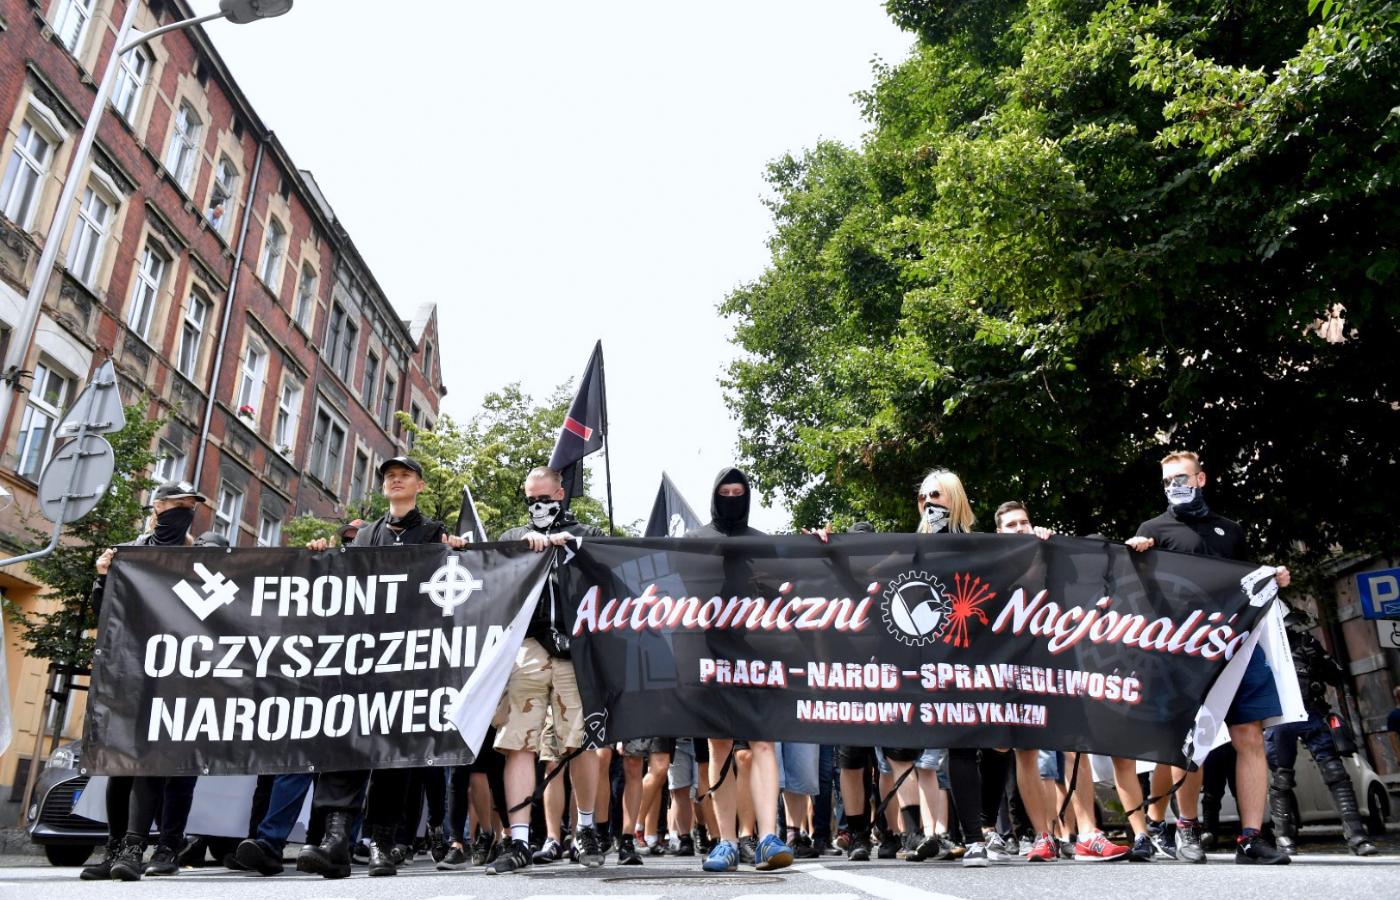 Demonstracja „Katowice miastem nacjonalizmu” w lipcu 2020 r. Marika Matuszak i Michał Ostrzycki trzymają transparent „Front Oczyszczenia Narodowego”.